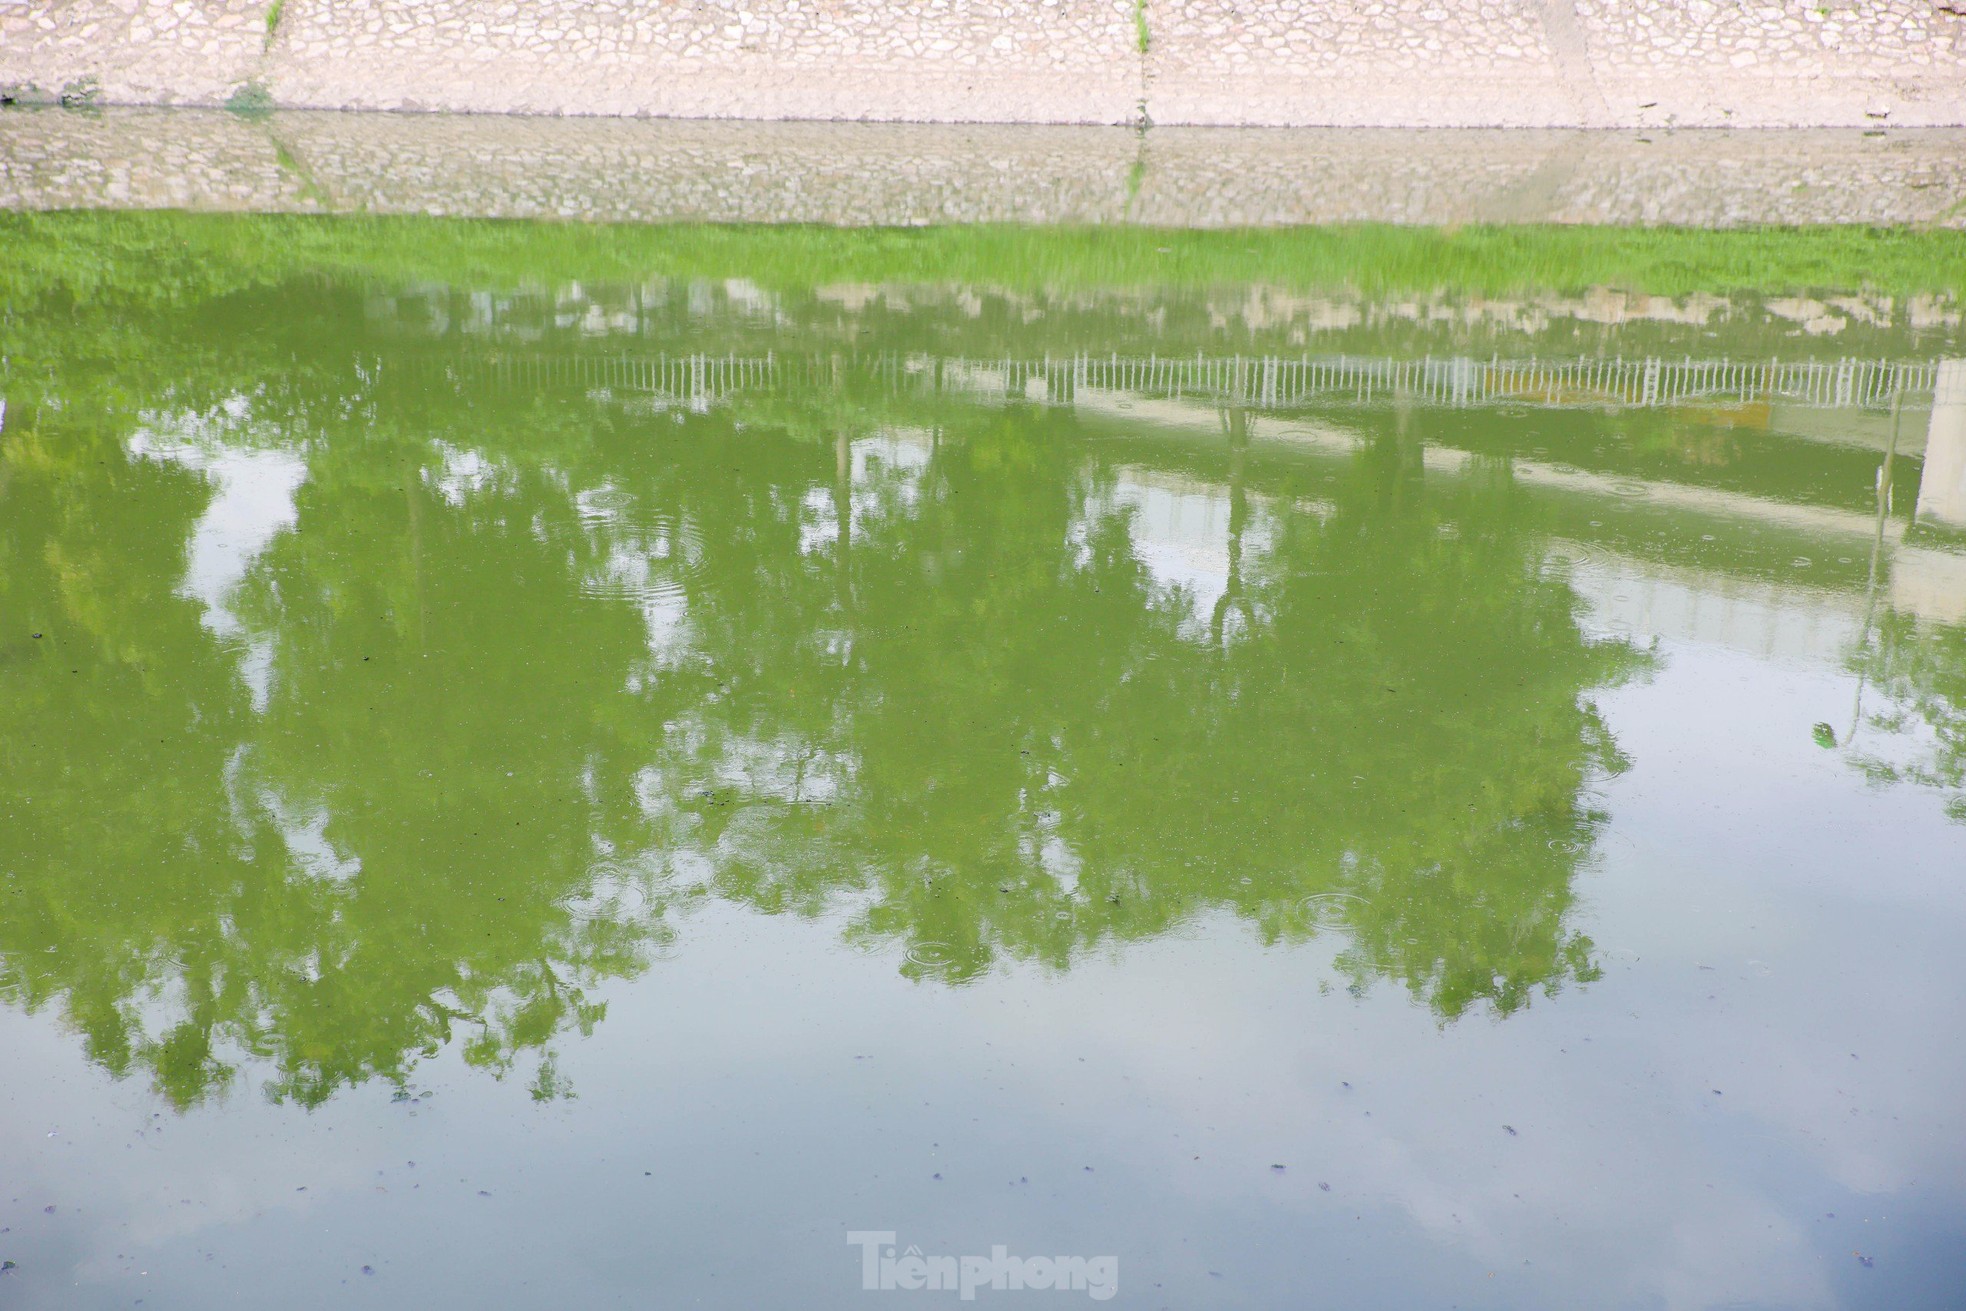 Sau thời gian ngắn ngủi chuyển màu xanh, nước sông Tô Lịch lại đen kịt, hôi thối- Ảnh 3.